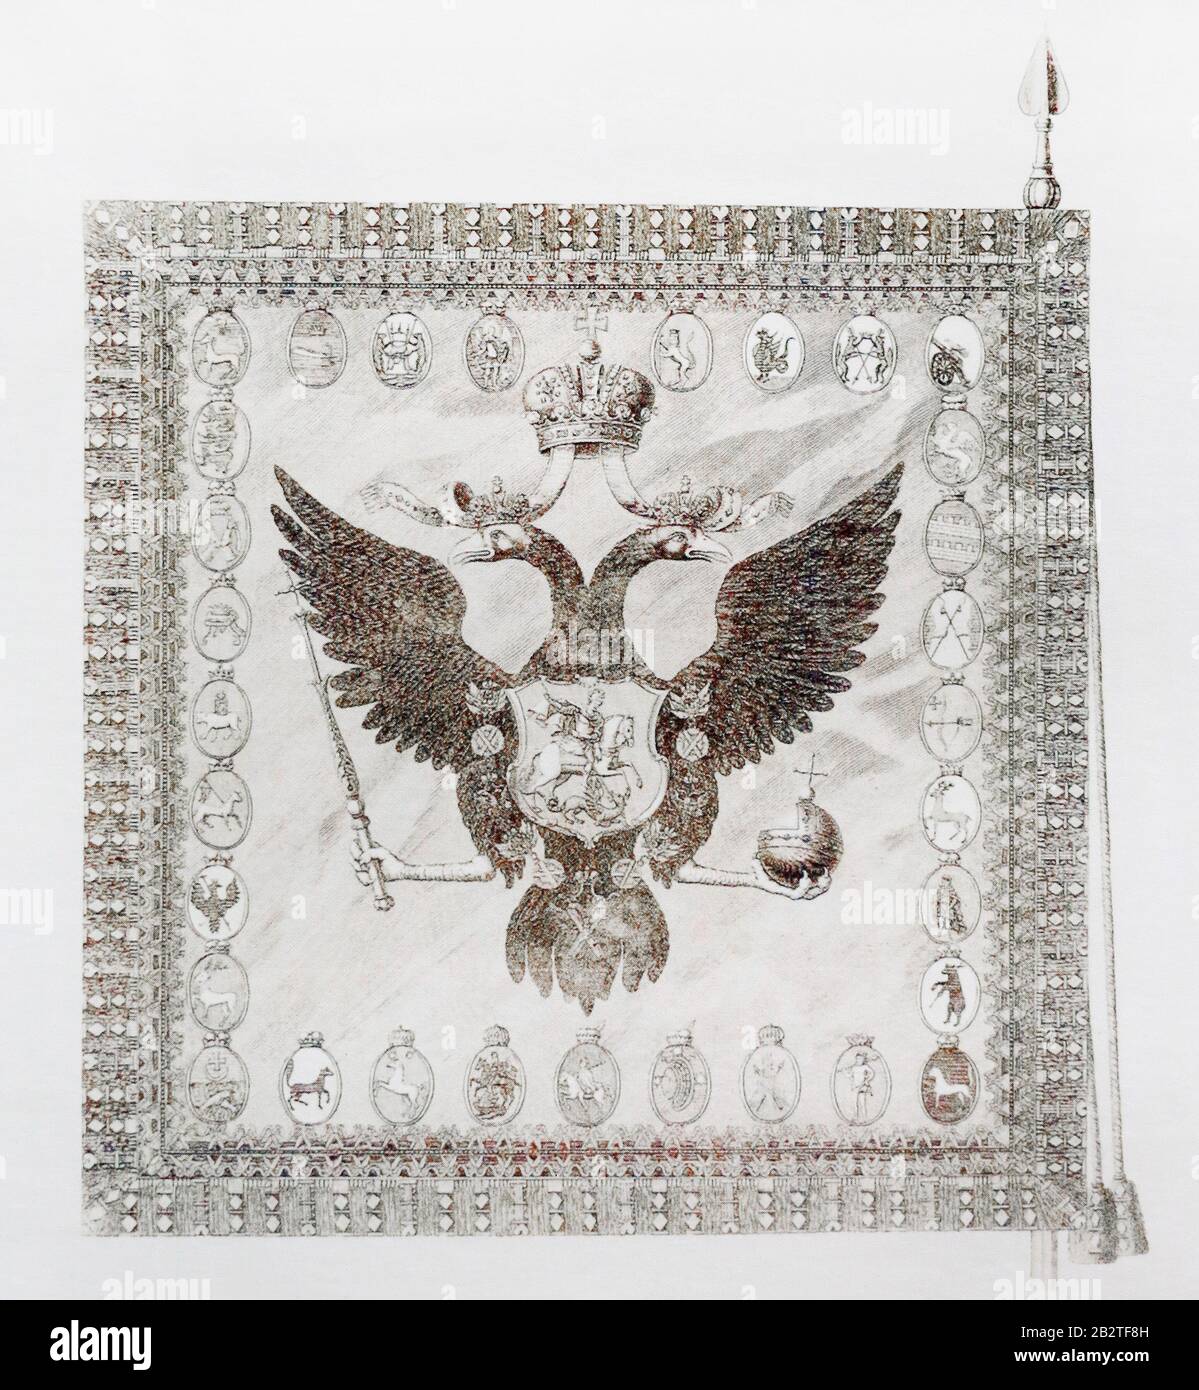 Aigle à double tête sur la bannière de l'Etat de Russie du XVIIIe siècle. Banque D'Images